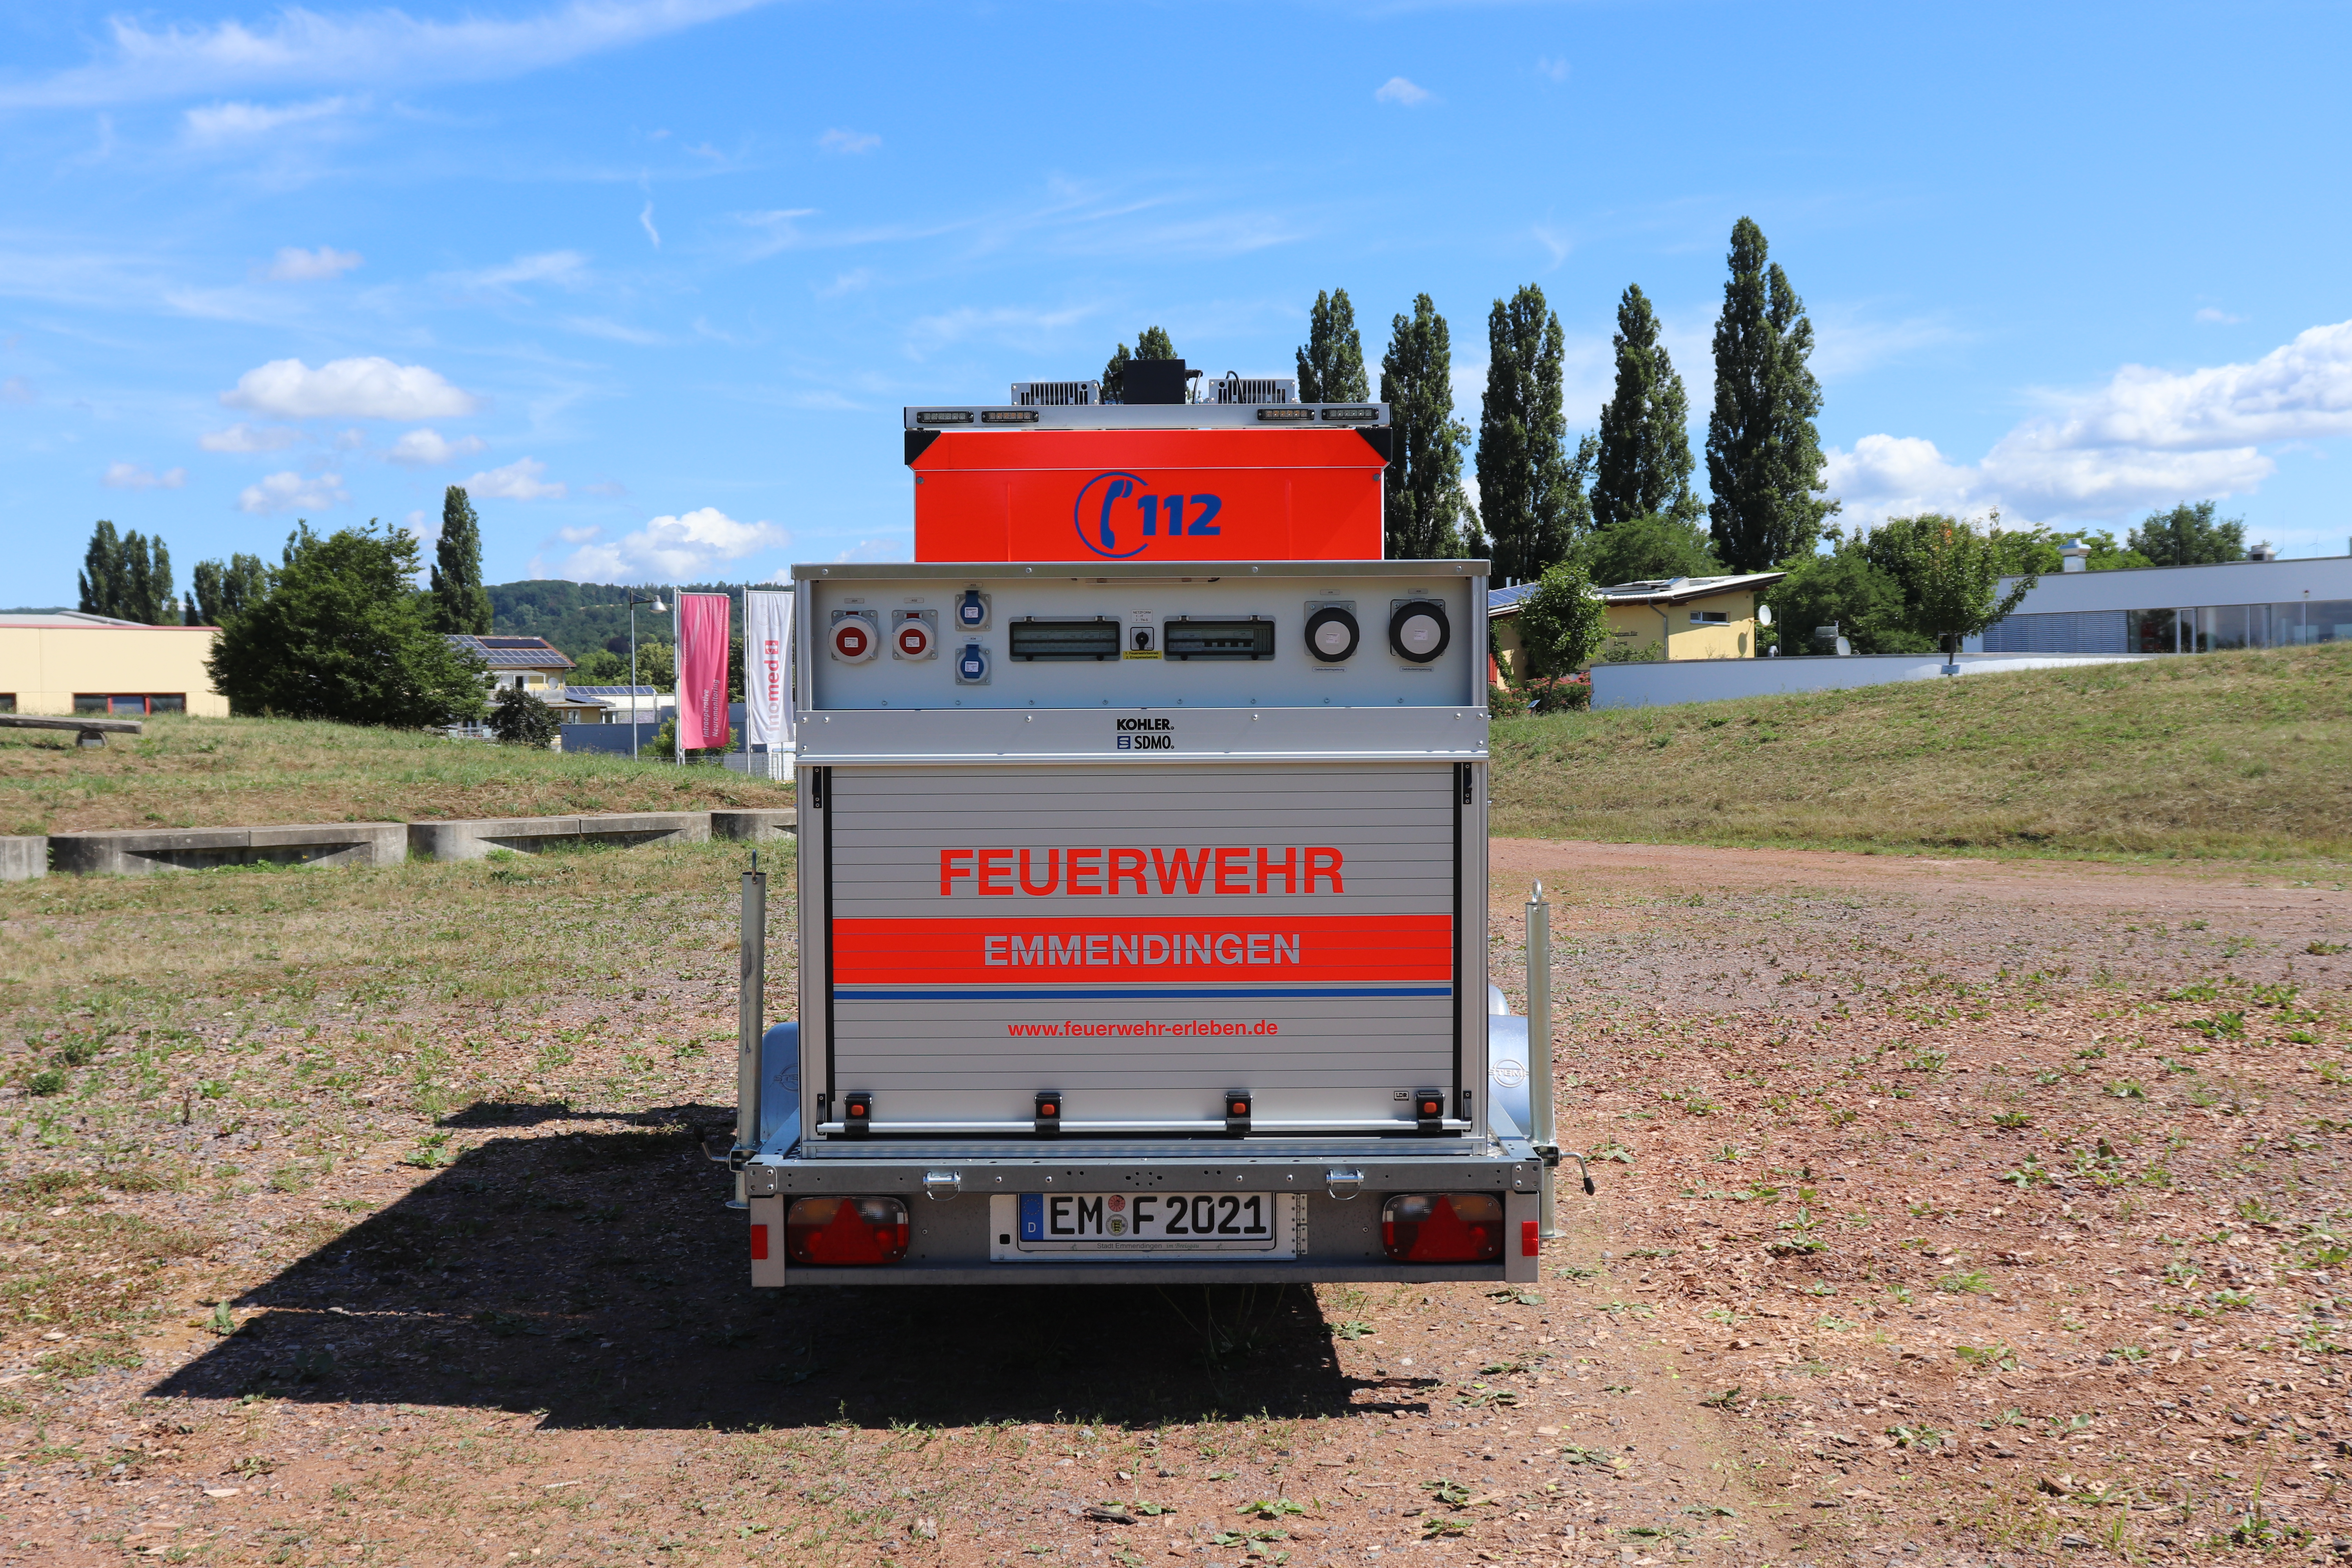 FwA (Feuerwehranhänger) Stromversorgung / NEA